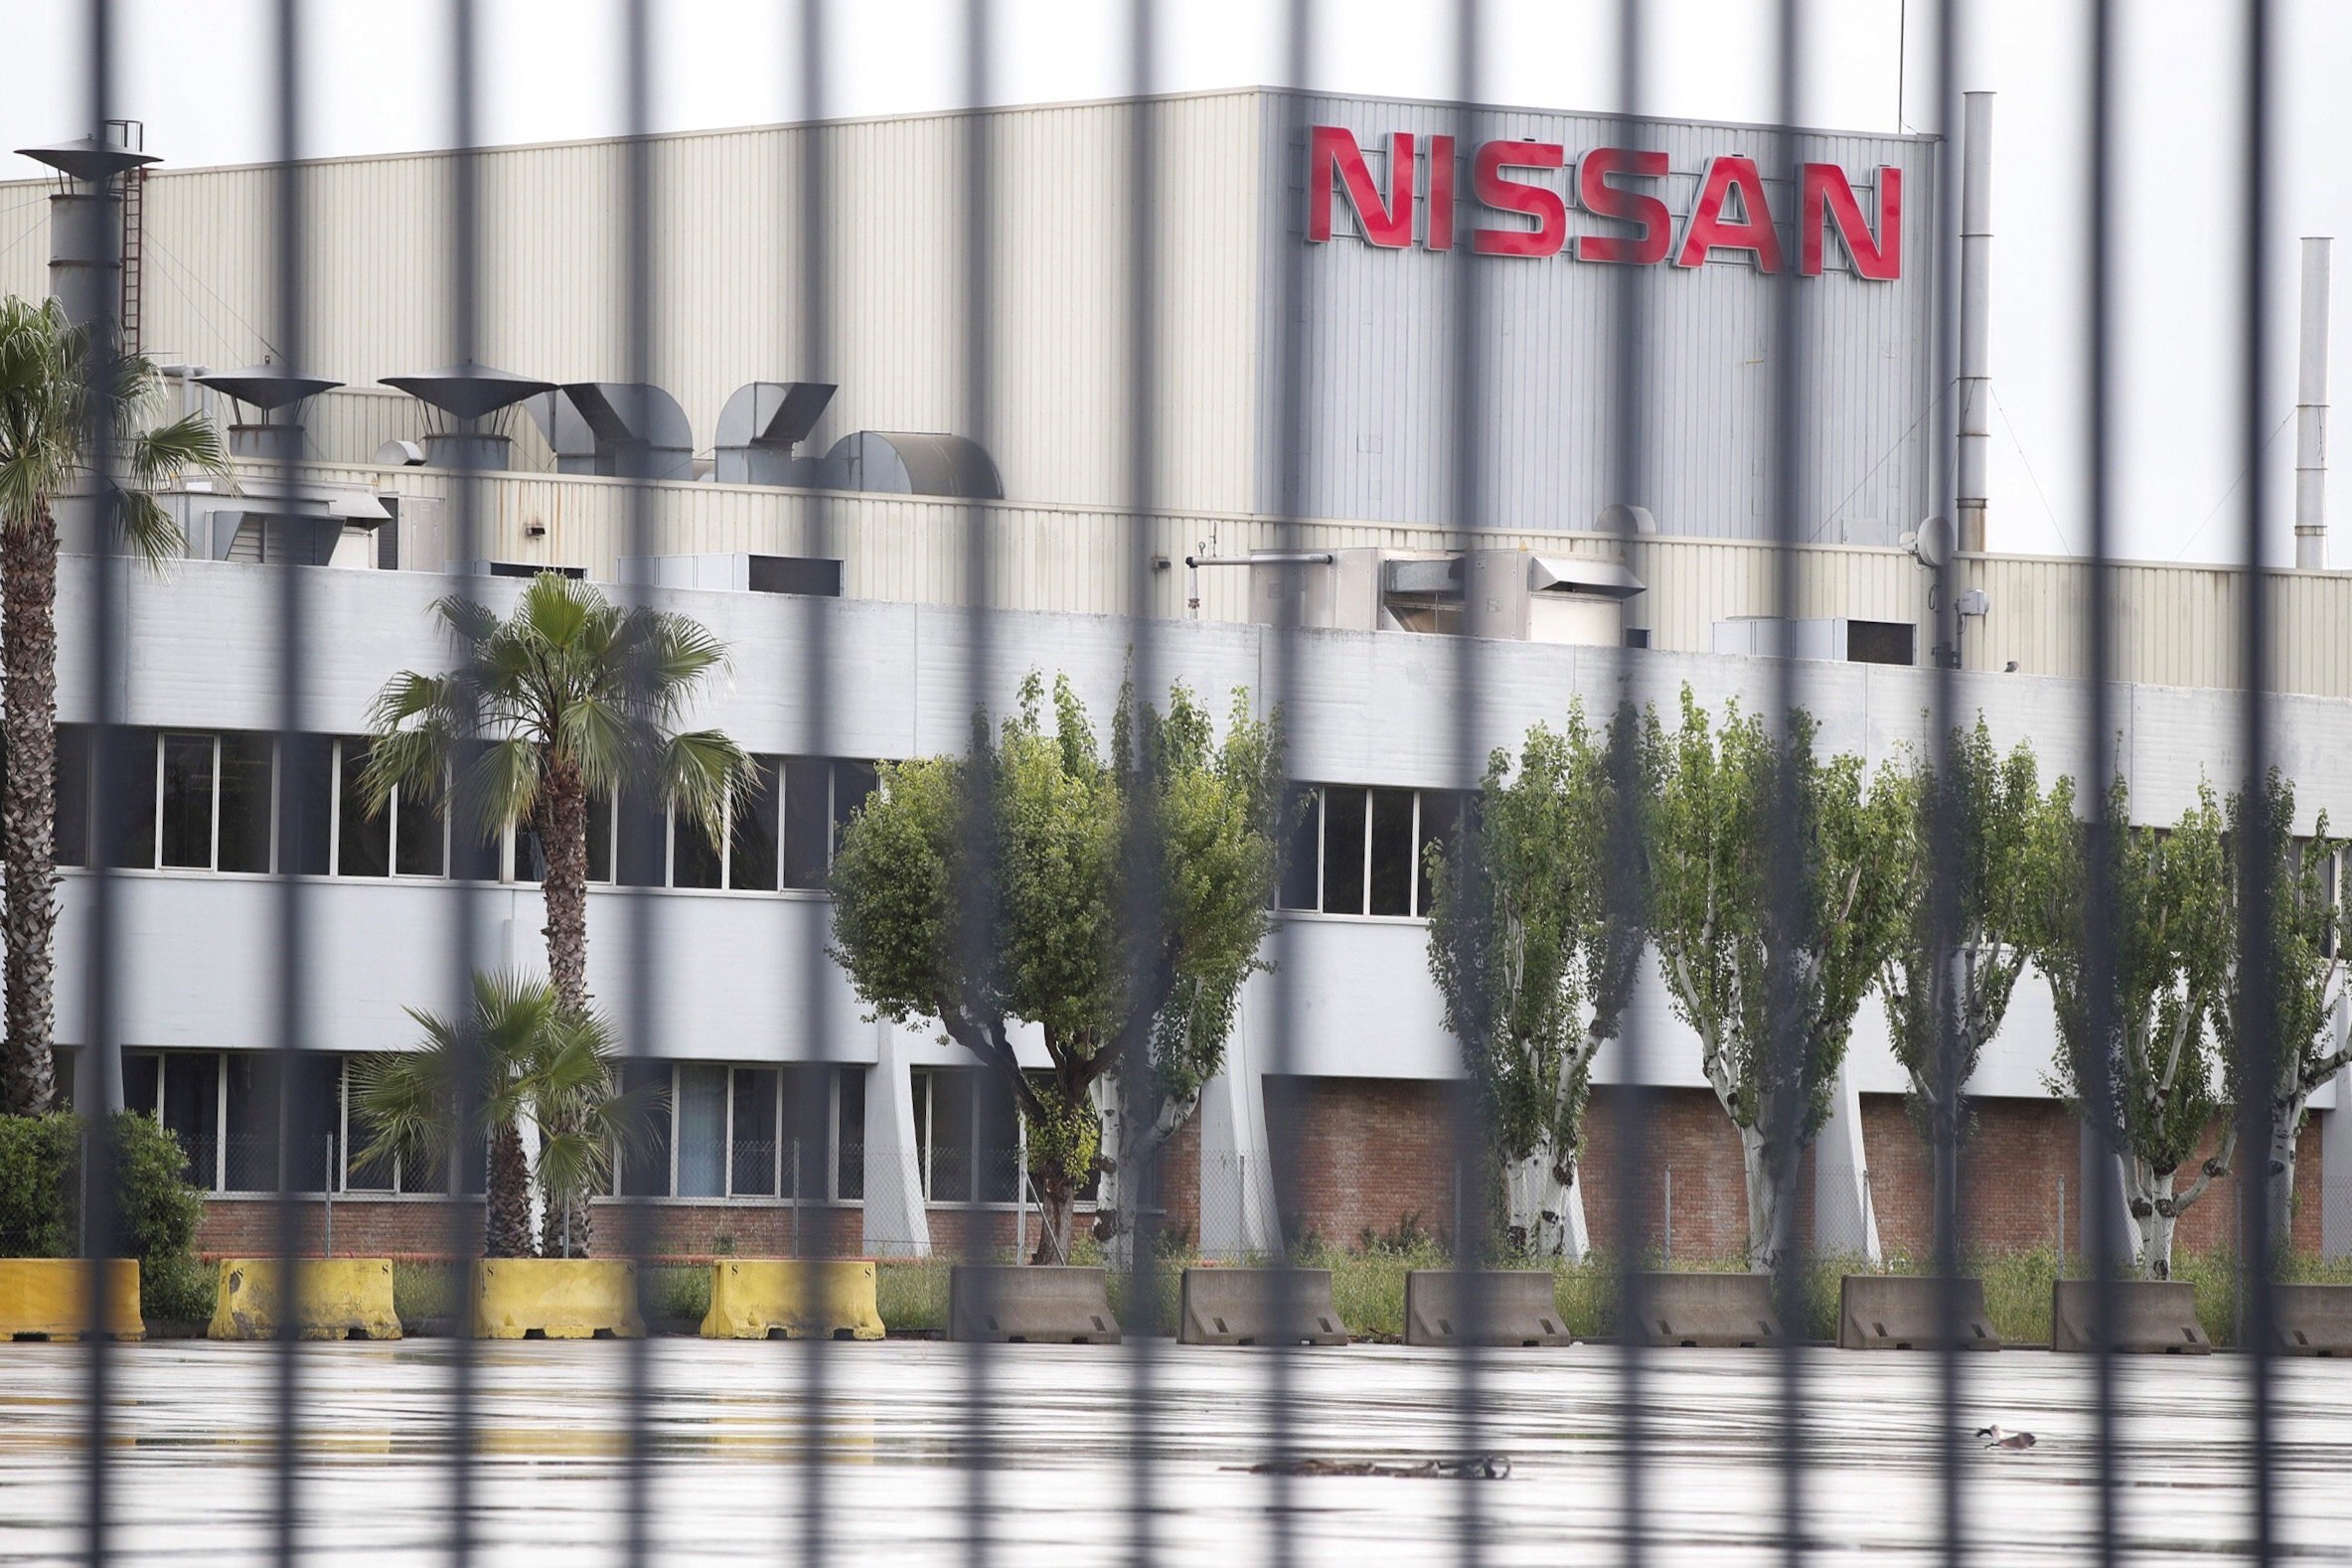 La automovilística china Chery ultima su desembarco en los antiguos terrenos de Nissan en la Zona Franca de Barcelona